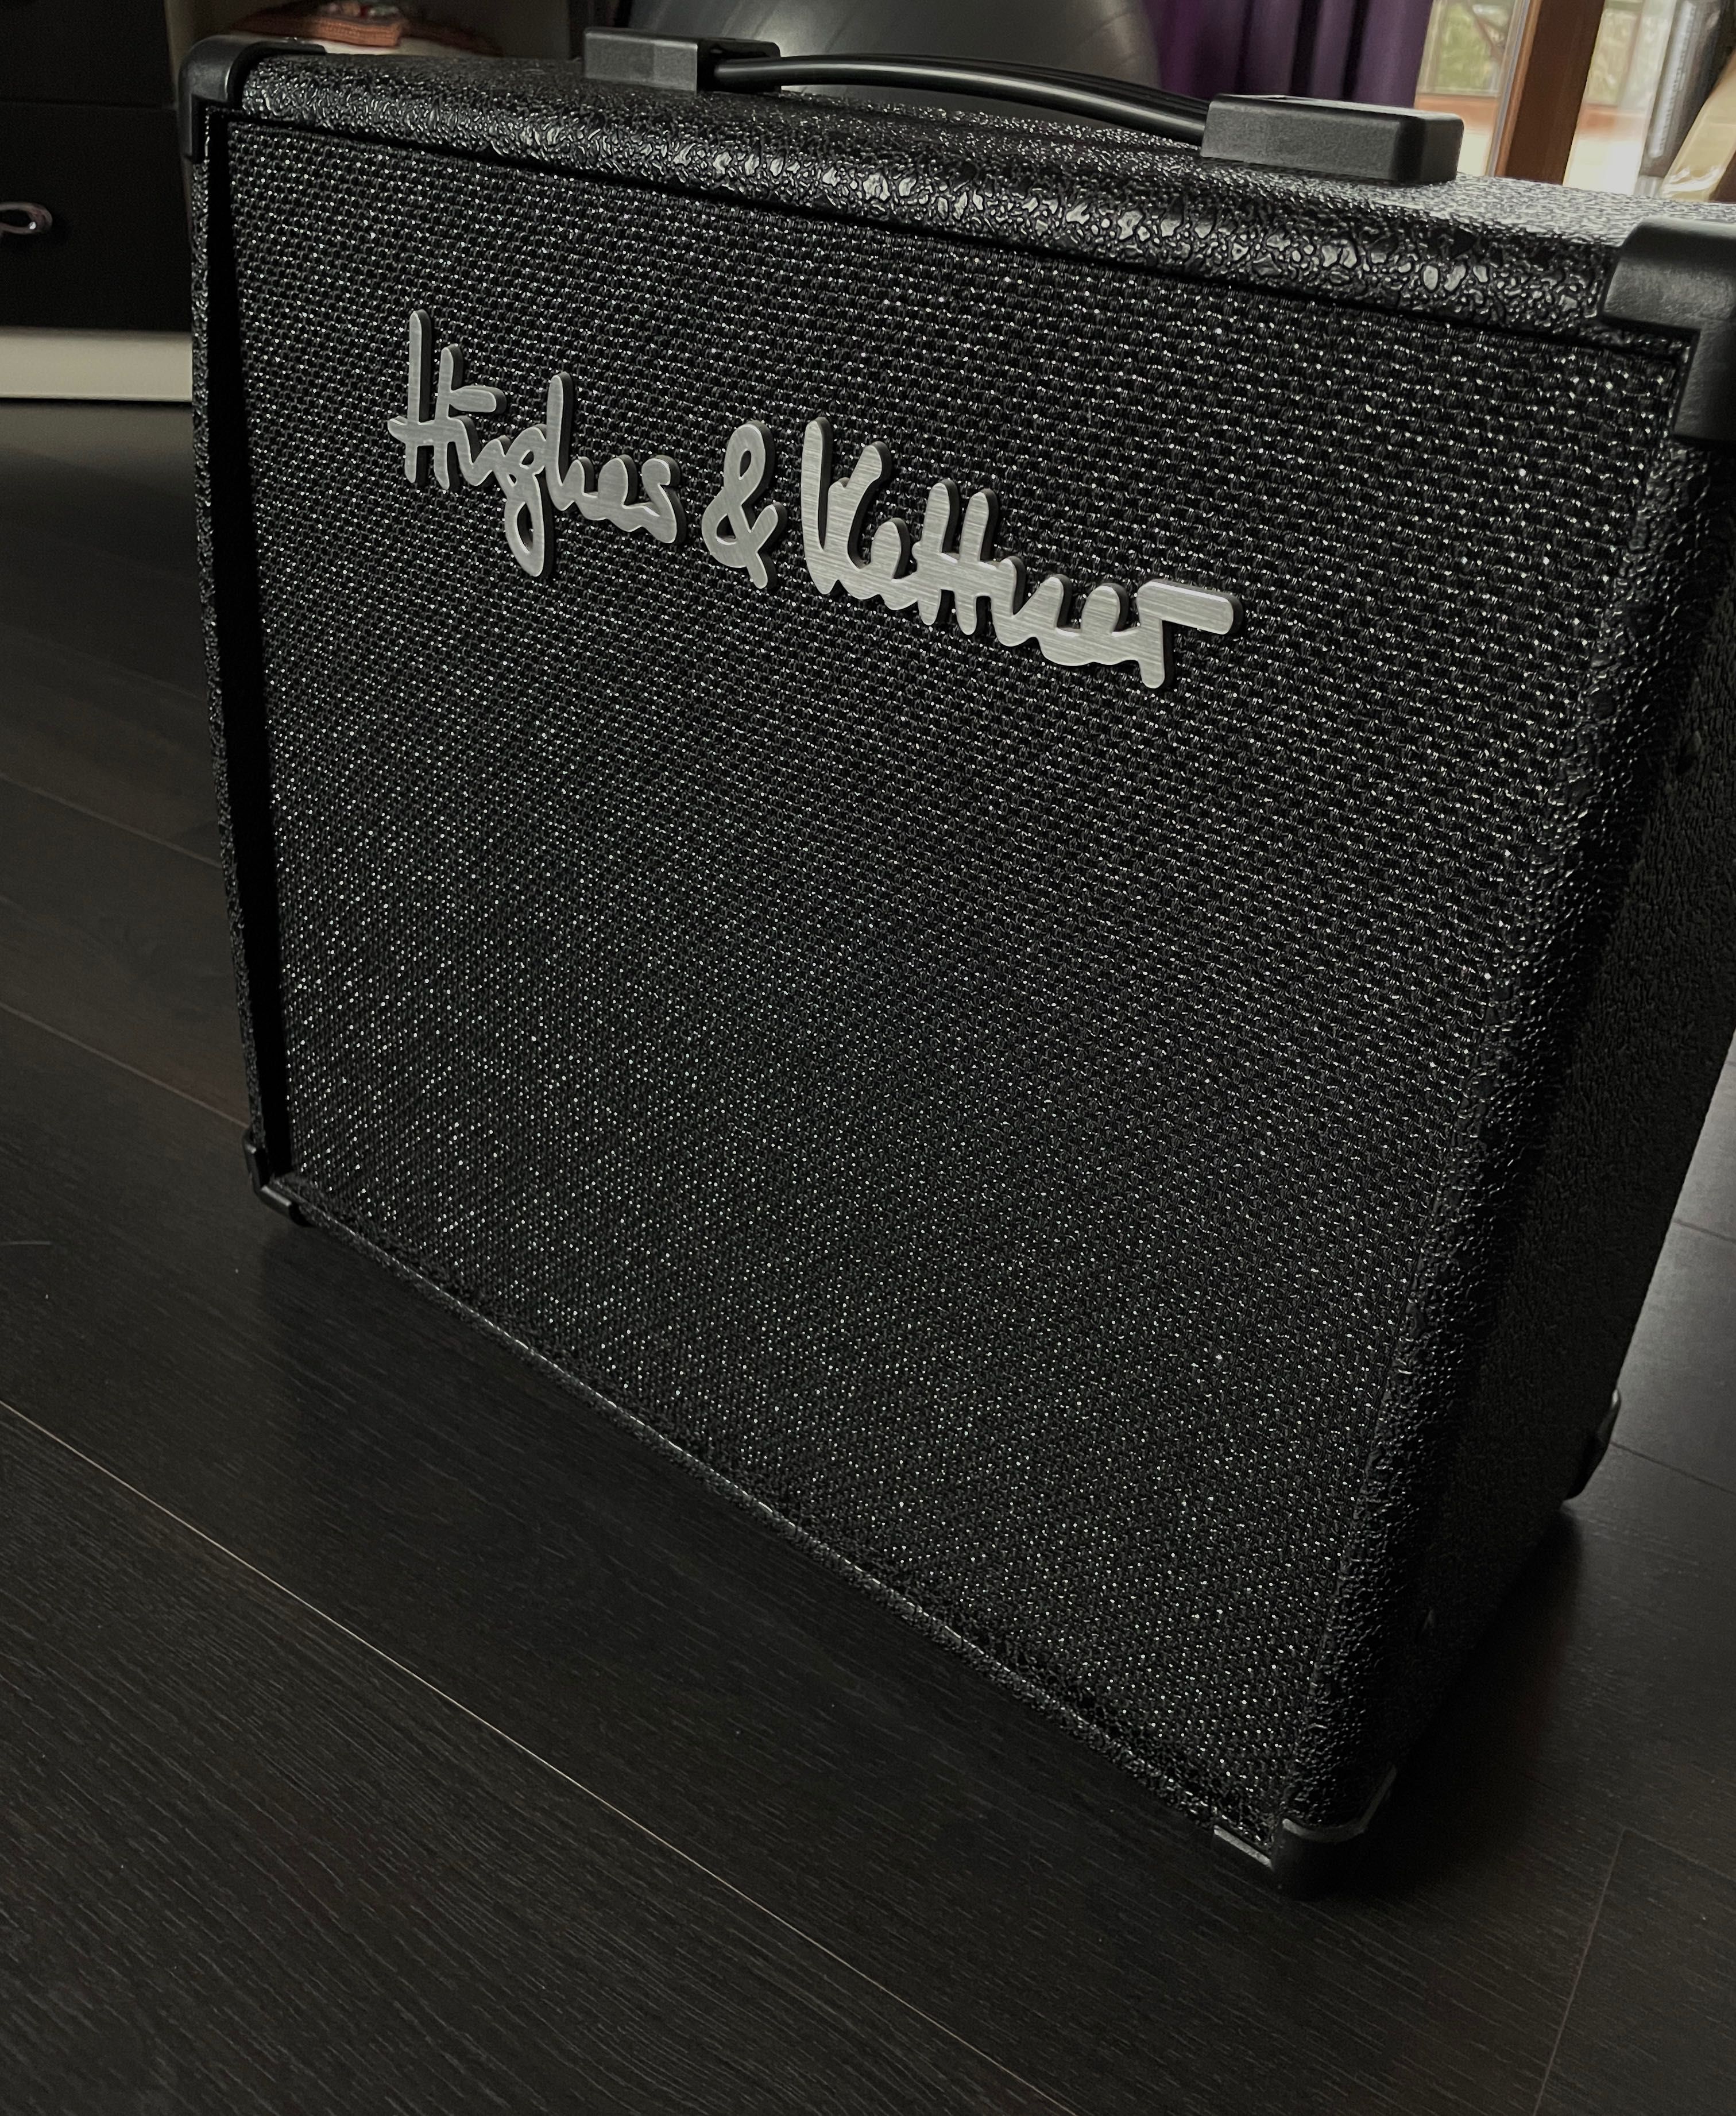 Комбоусилитель Hughes & Kettner Edition Blue 30 DFX для электрогитары.